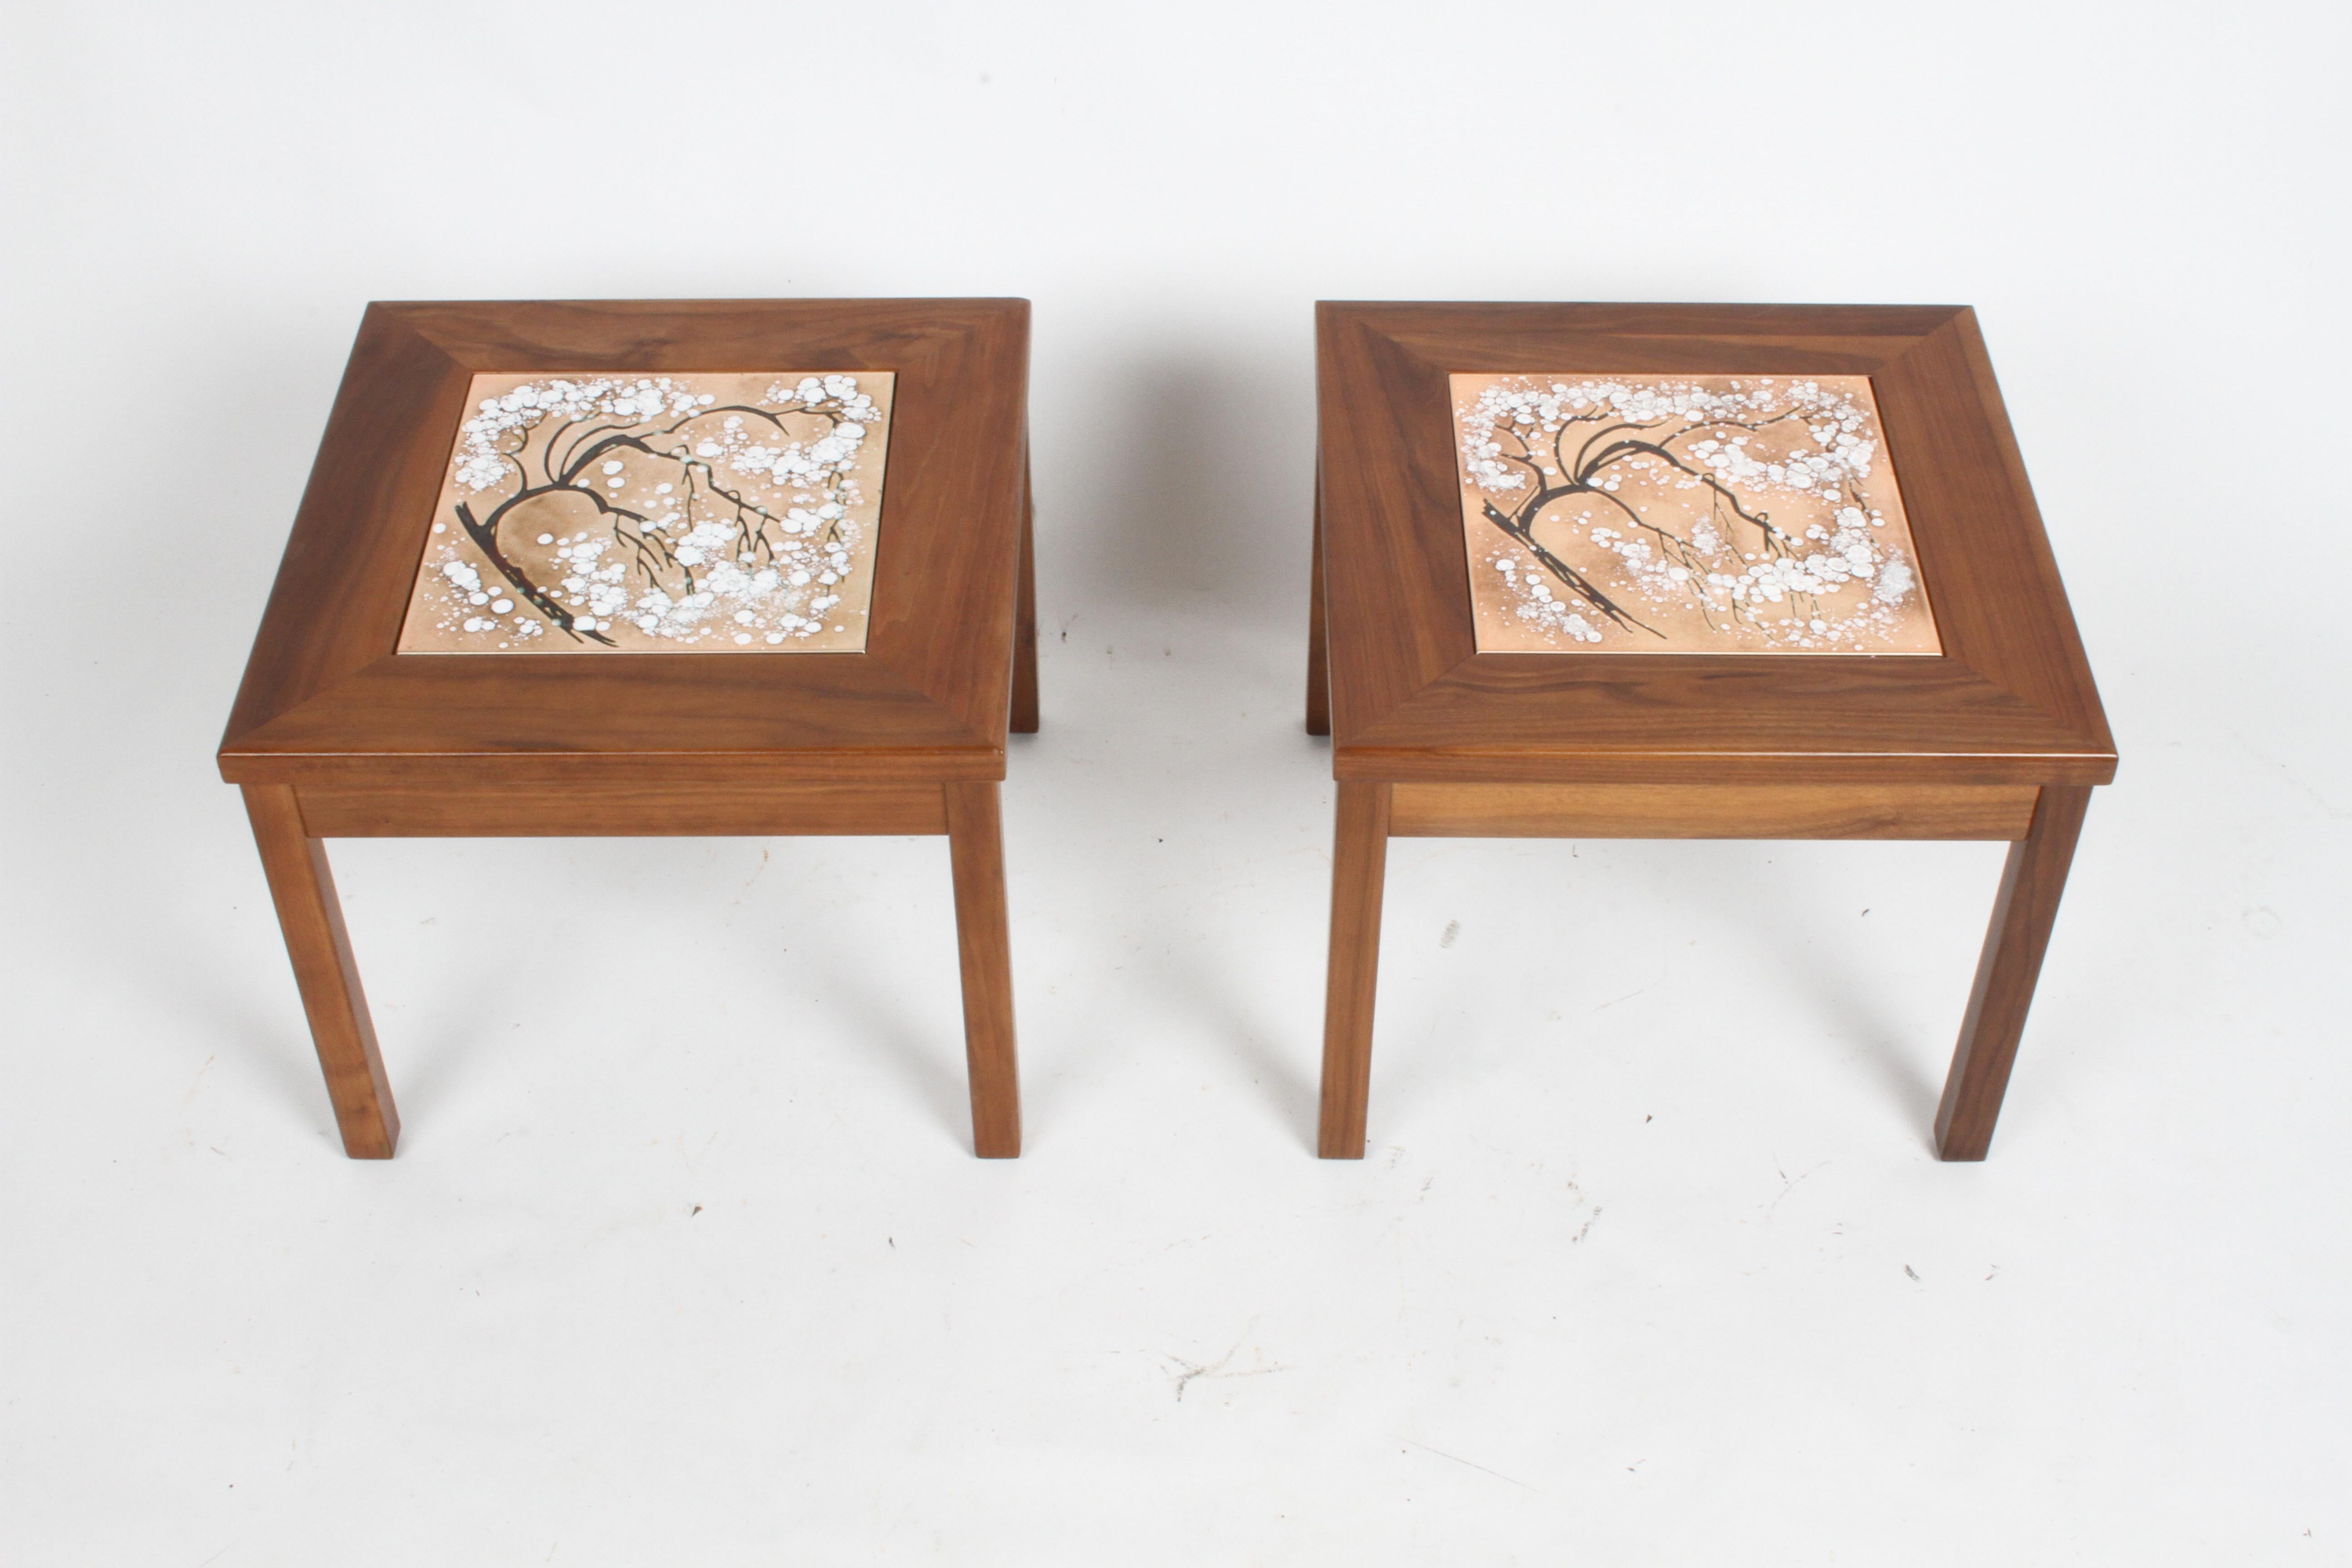 Zwei moderne Beistelltische aus Nussbaumholz von John Keal for Brown Saltman aus der Jahrhundertmitte mit bunten Keramikkacheln in Form eines abstrakten japanischen Schneeglockenbaums. Neu lackiert und neu geklebt. Keine Labels.